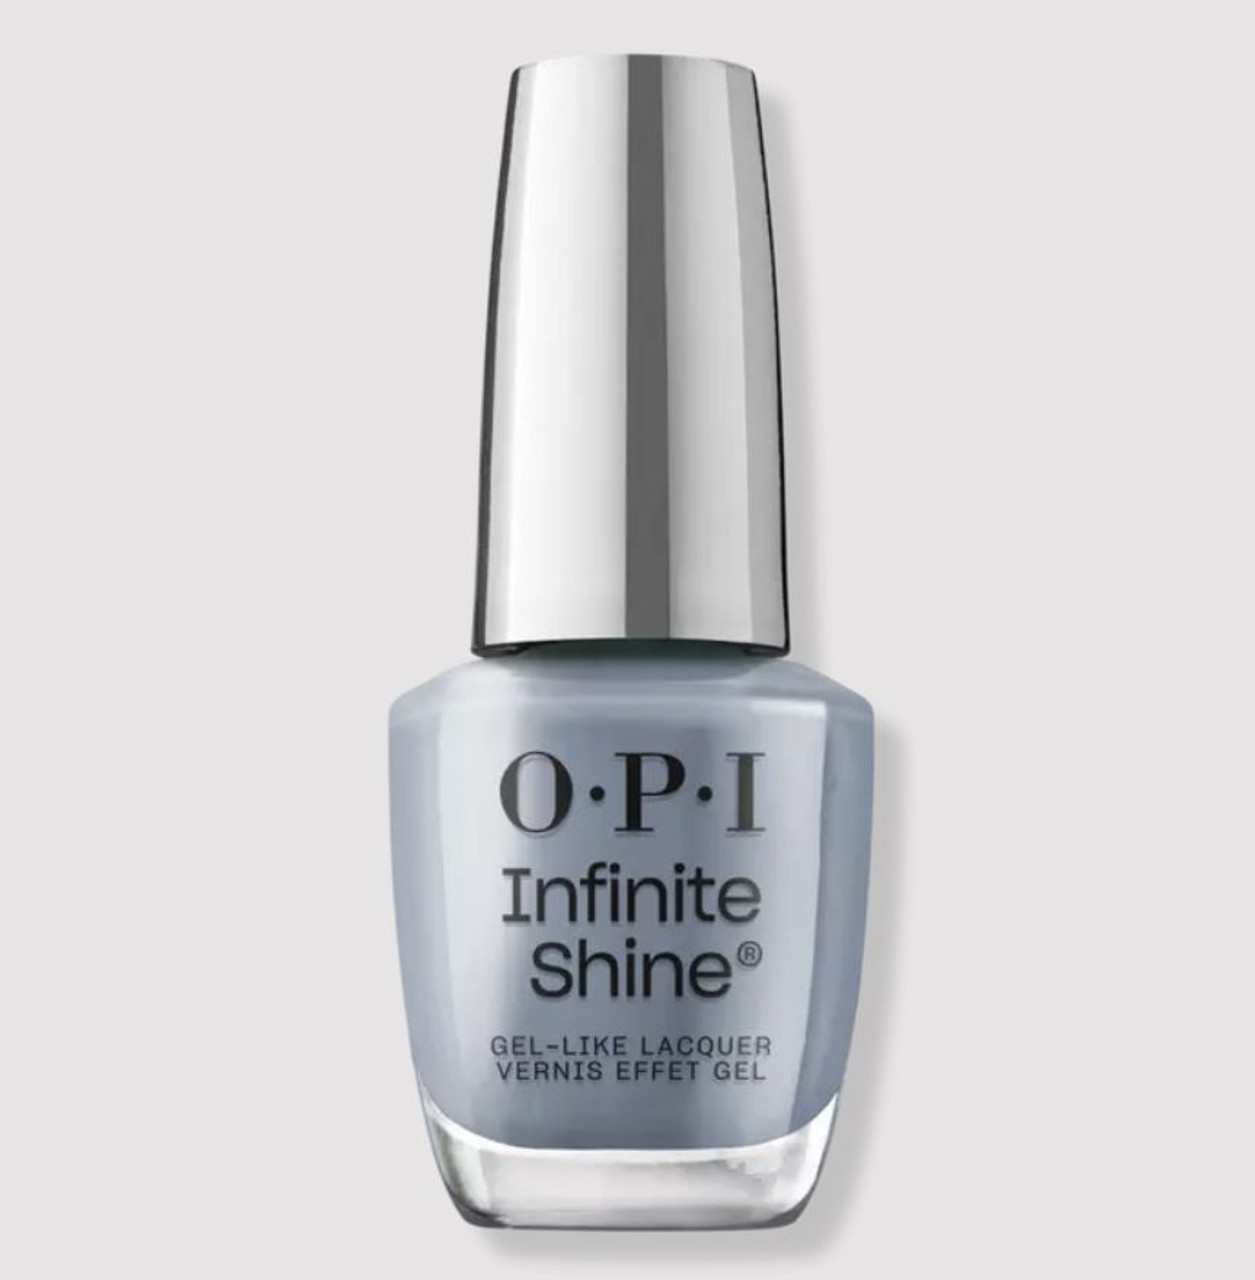 OPI Infinite Shine Pure Jean-ius - .5 Oz / 15 mL